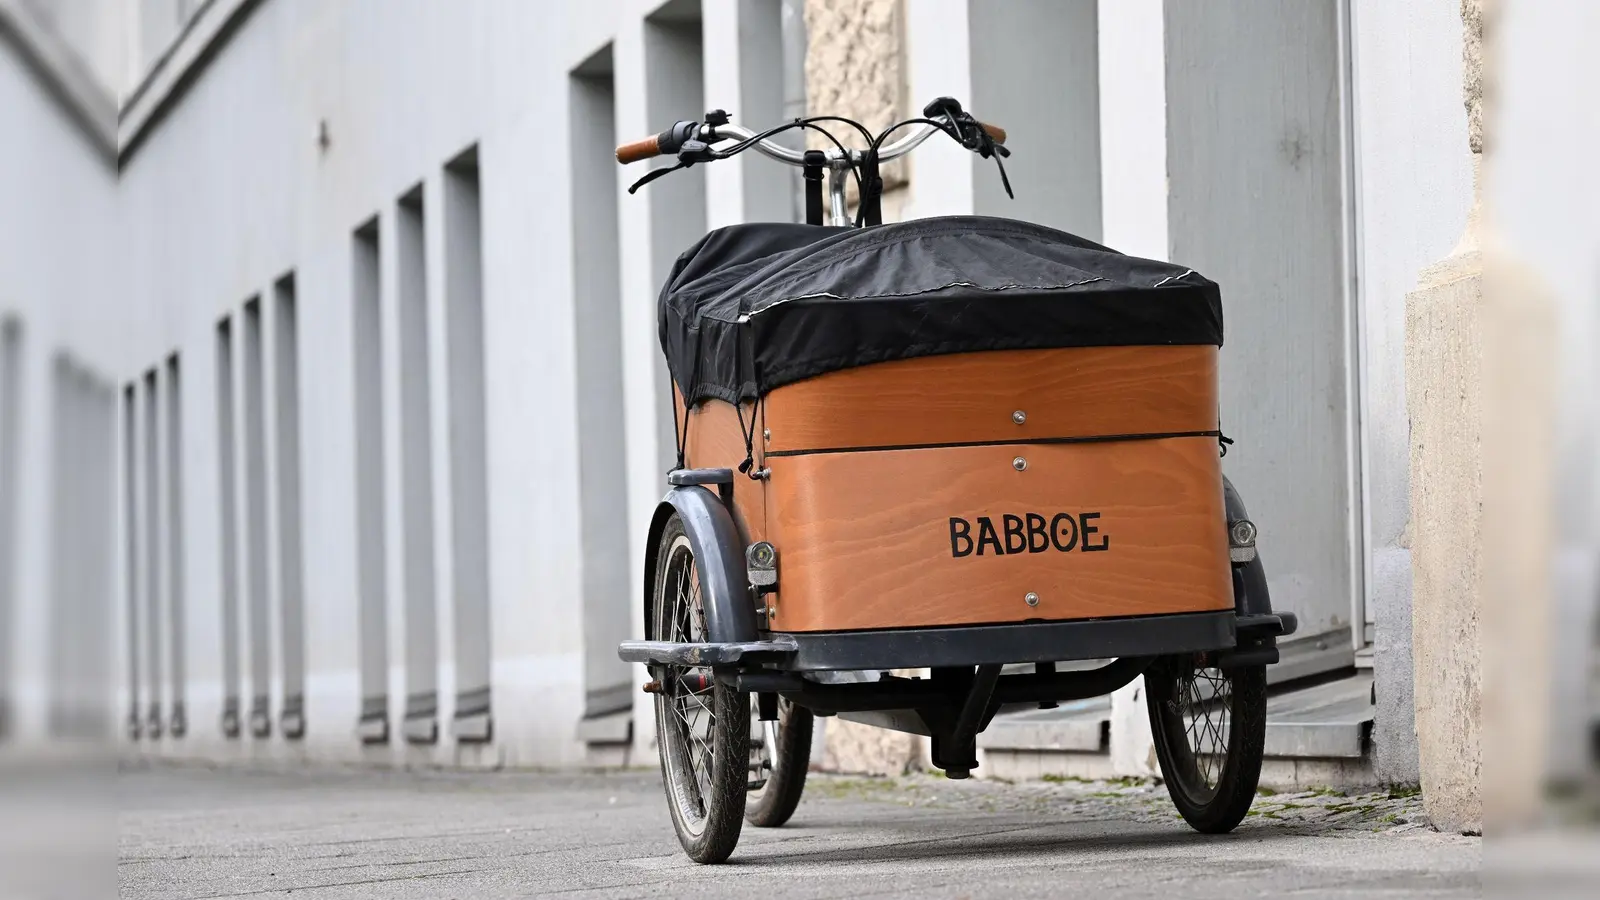 Babboe bereitet einen Rückruf verschiedener Lastenrad-Modelle vor – es gibt Sicherheitsprobleme mit Rahmenbrüchen. (Foto: Martin Schutt/dpa)